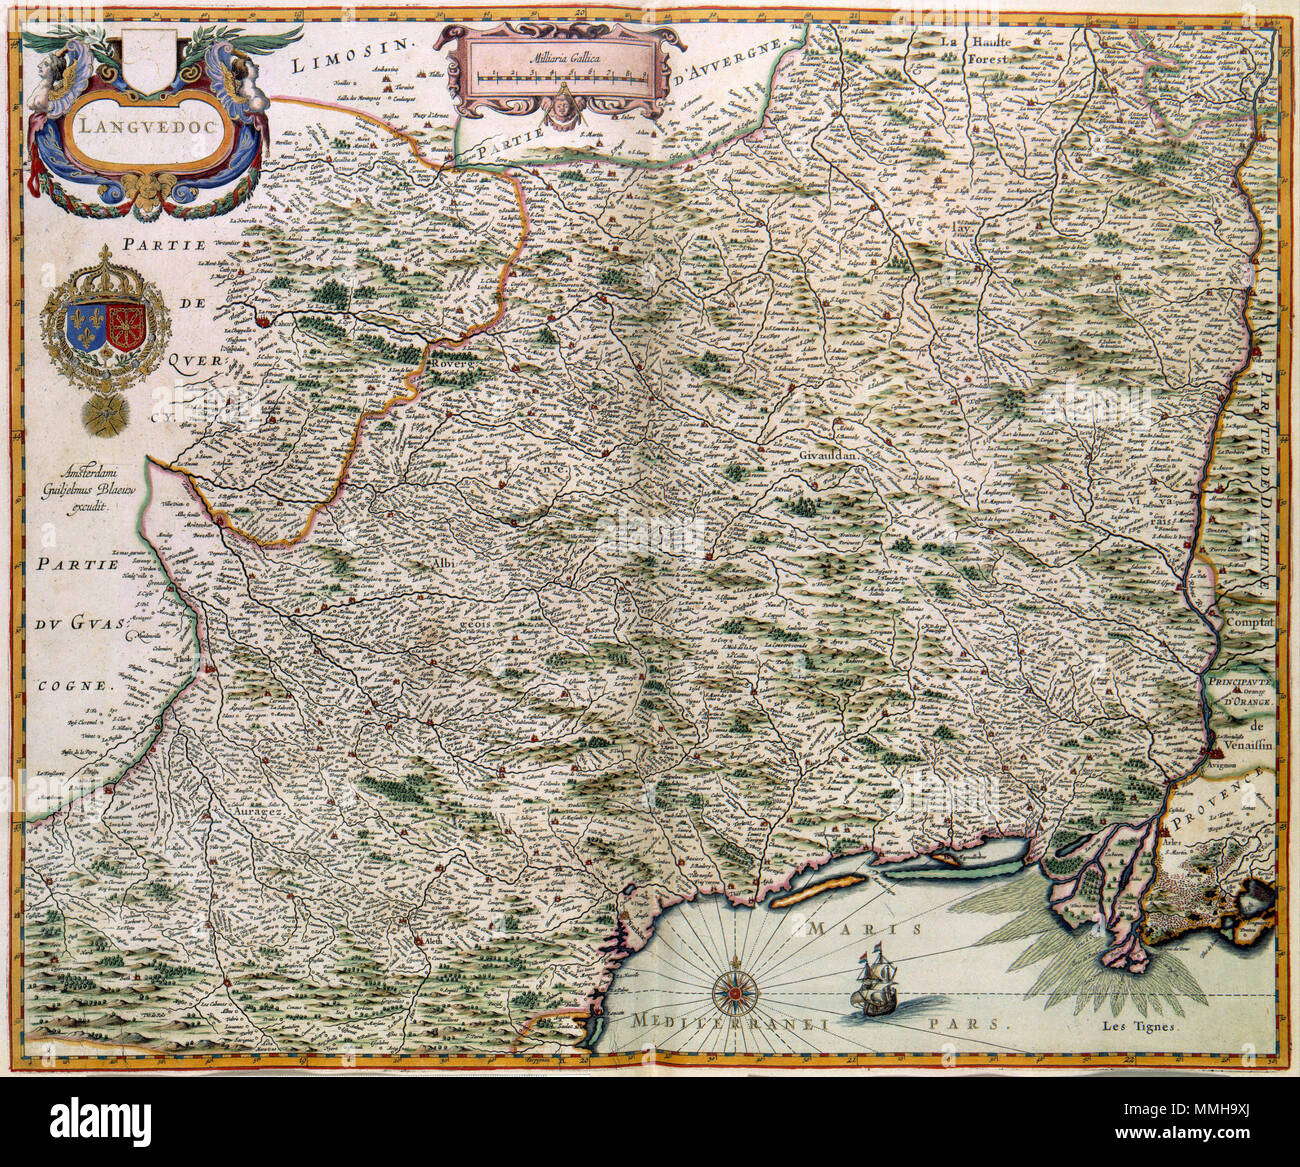 Festival hamer Welkom Nederlands: Deze kaart werd voor het eerst in 1631 gepubliceerd door Willem  Jansz. Blaeu (1571-1638). Blaeu kopieerde de kaart uit een atlas van zijn  collega Henricus Hondius II (1597-1651). English: This